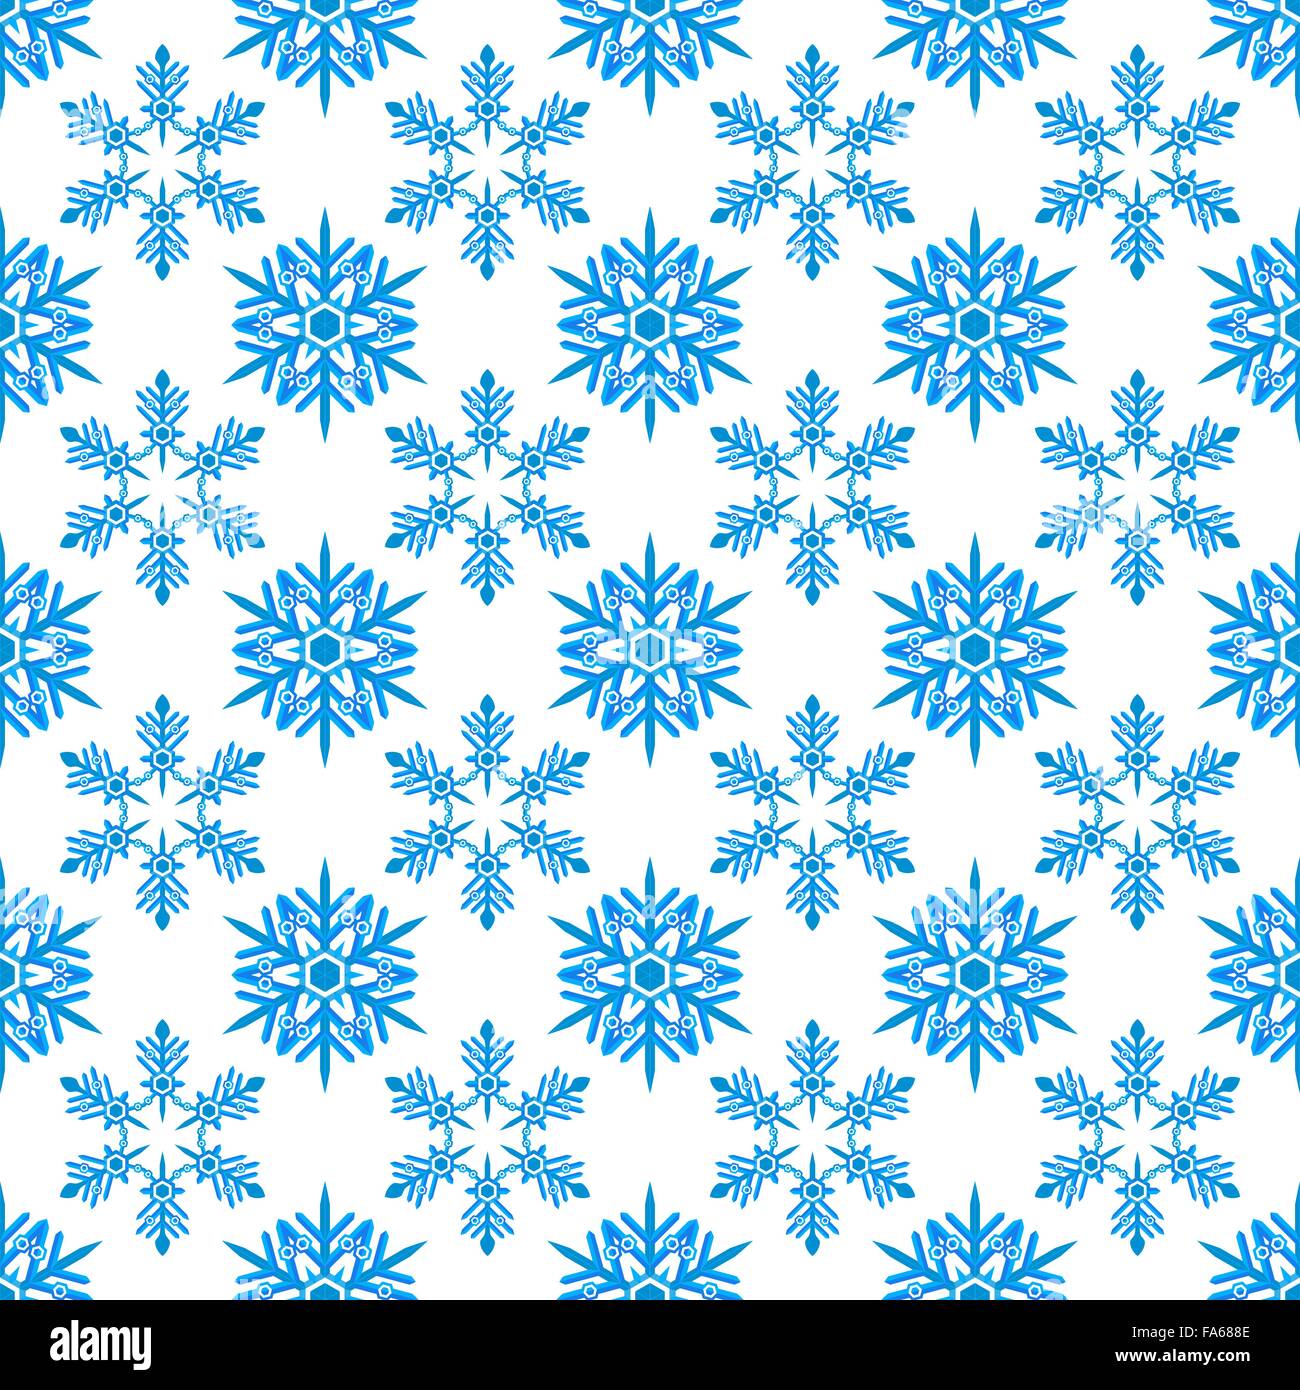 Vektor-farbige flache Design neues Jahr Weihnachten blaue Schneeflocken nahtlose Muster auf Cyan Hintergrund Stock Vektor